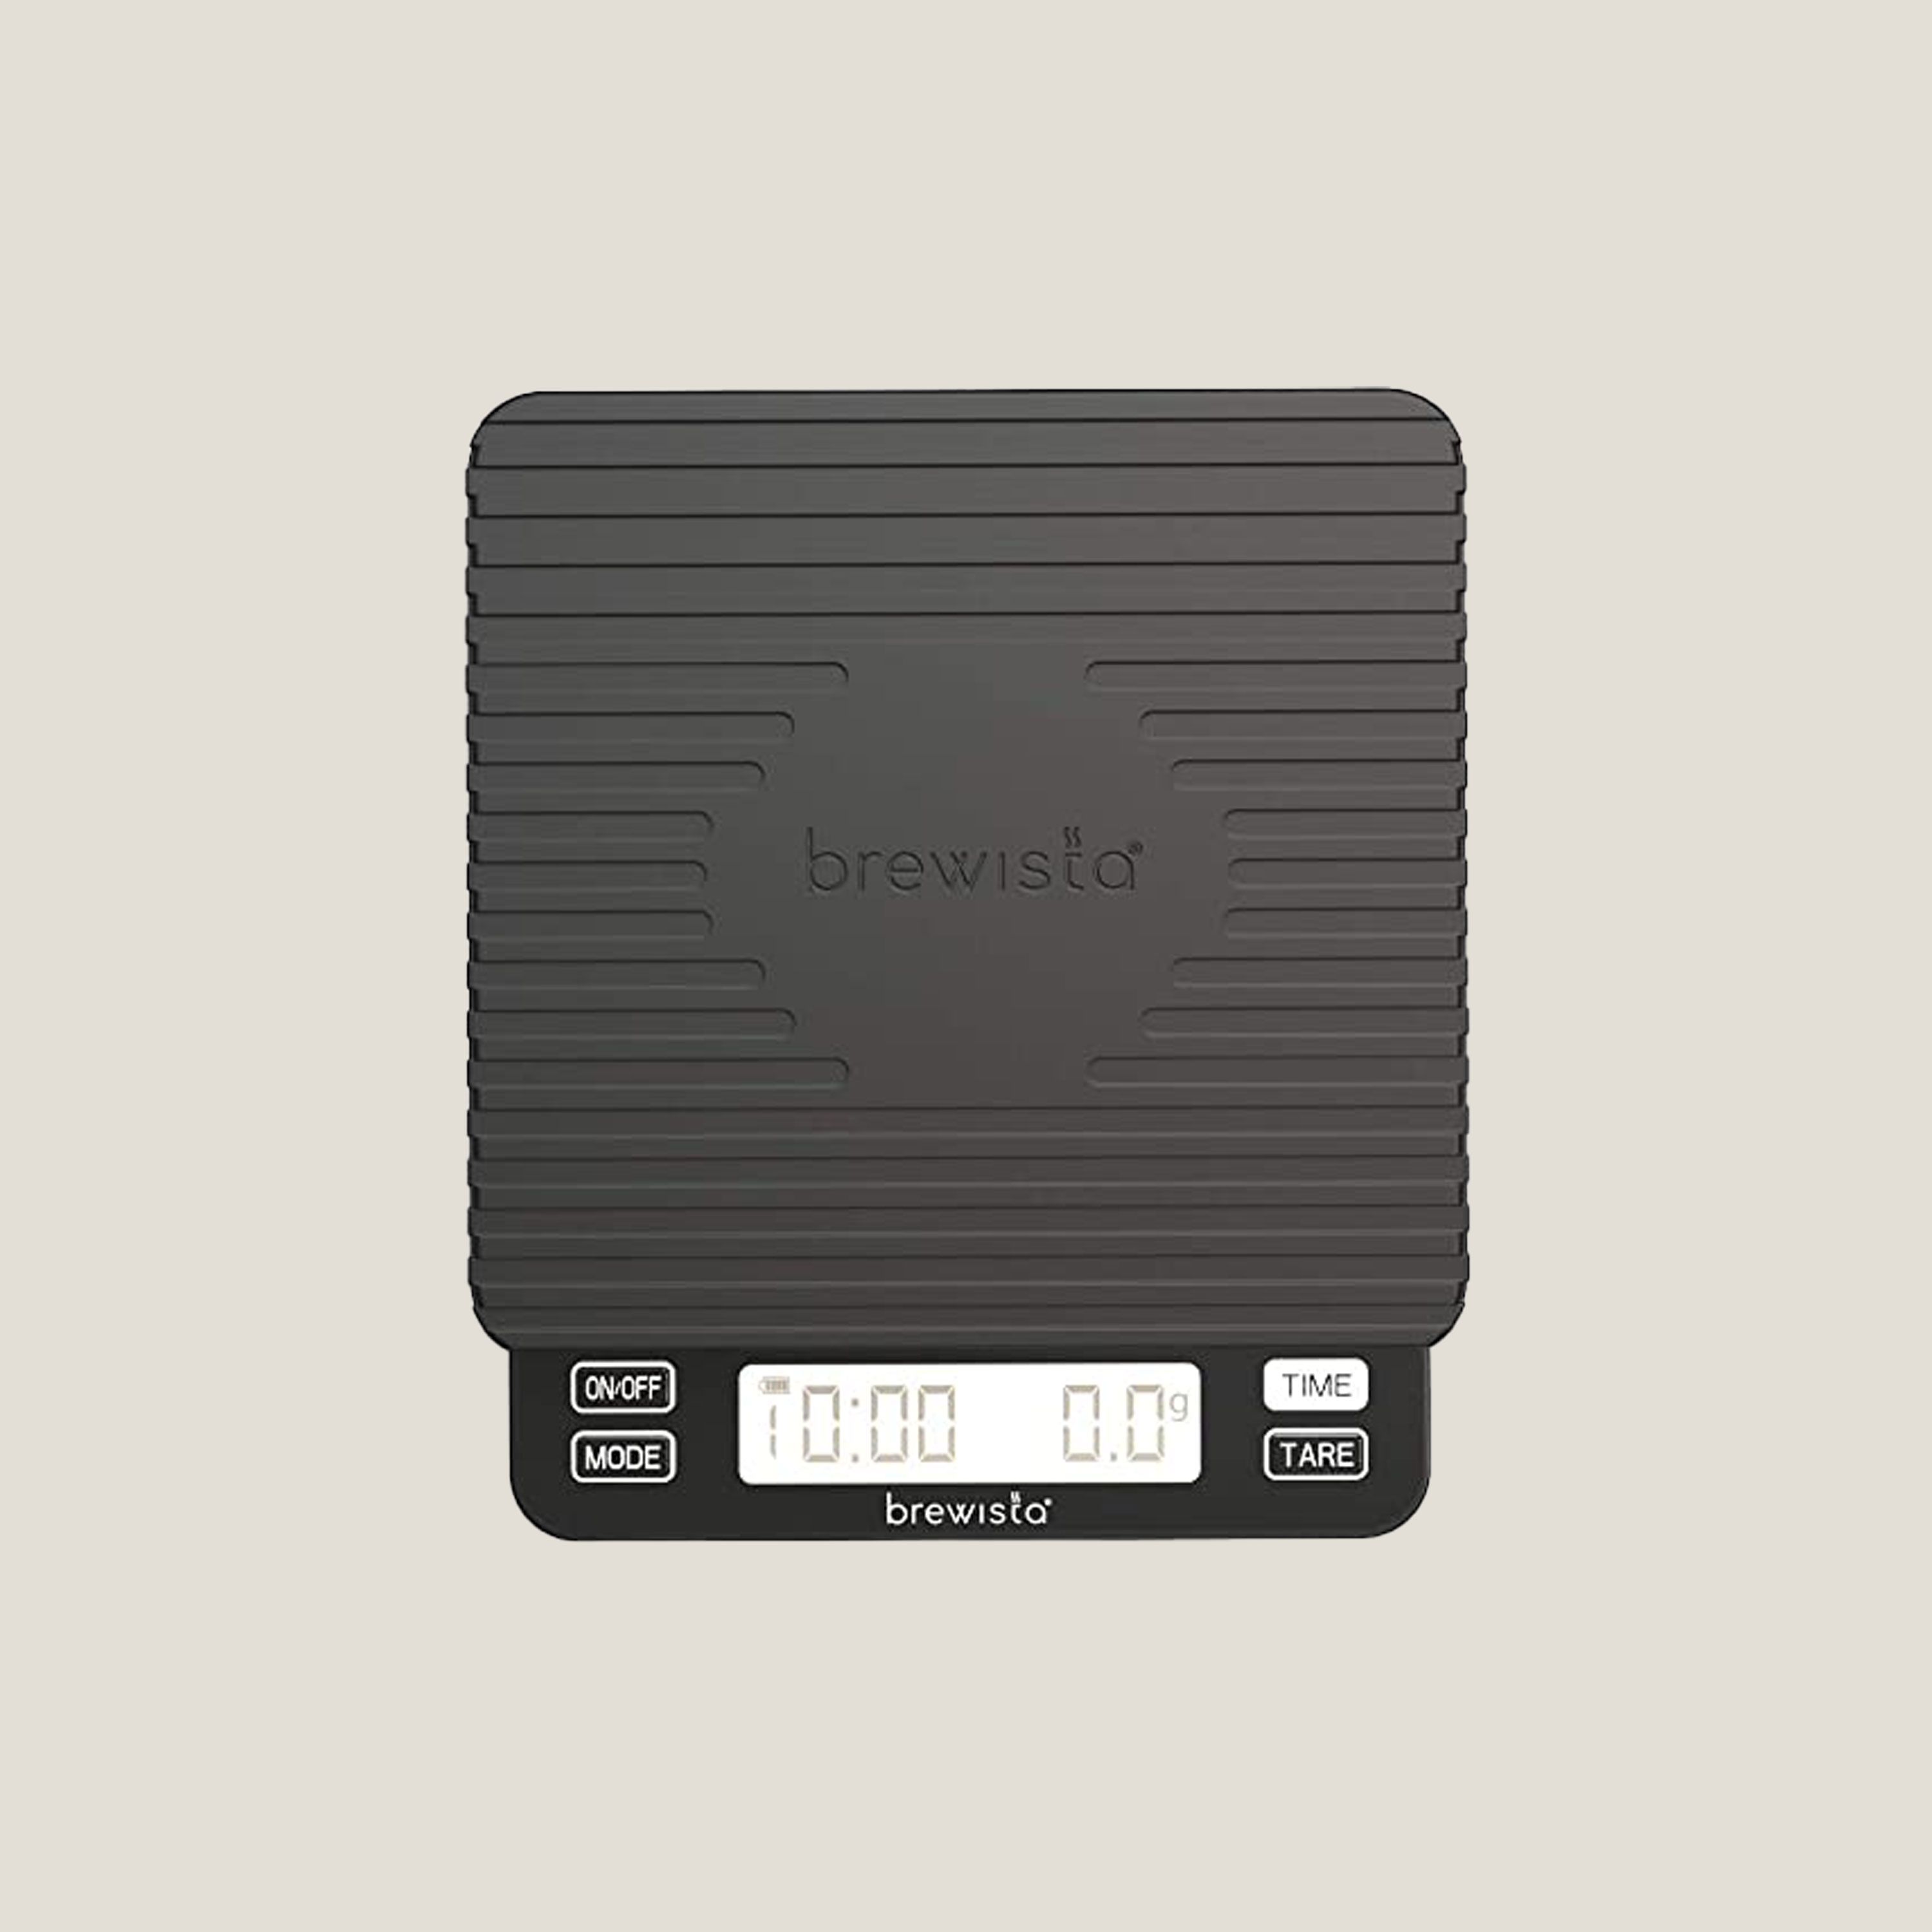 Brewista Smart Scale II – Kohiraifu 珈琲生活